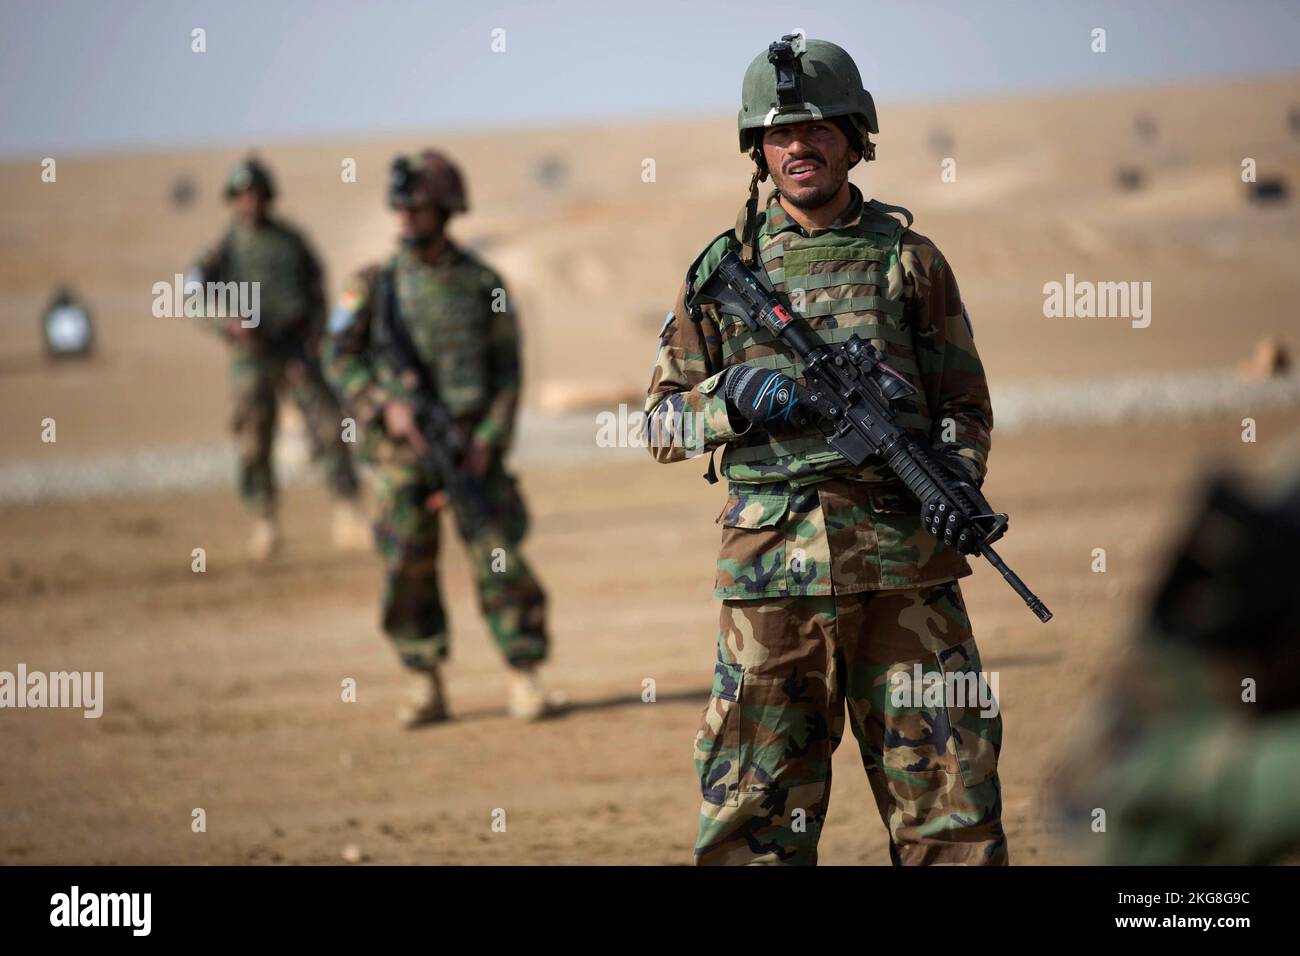 Provincia de Helmand, AFGANISTÁN - 02 de febrero de 2013 - Comandos afganos de la Compañía 3rd, 7th Operaciones Especiales Kandak participan en el simulacro de reacción al fuego Foto de stock